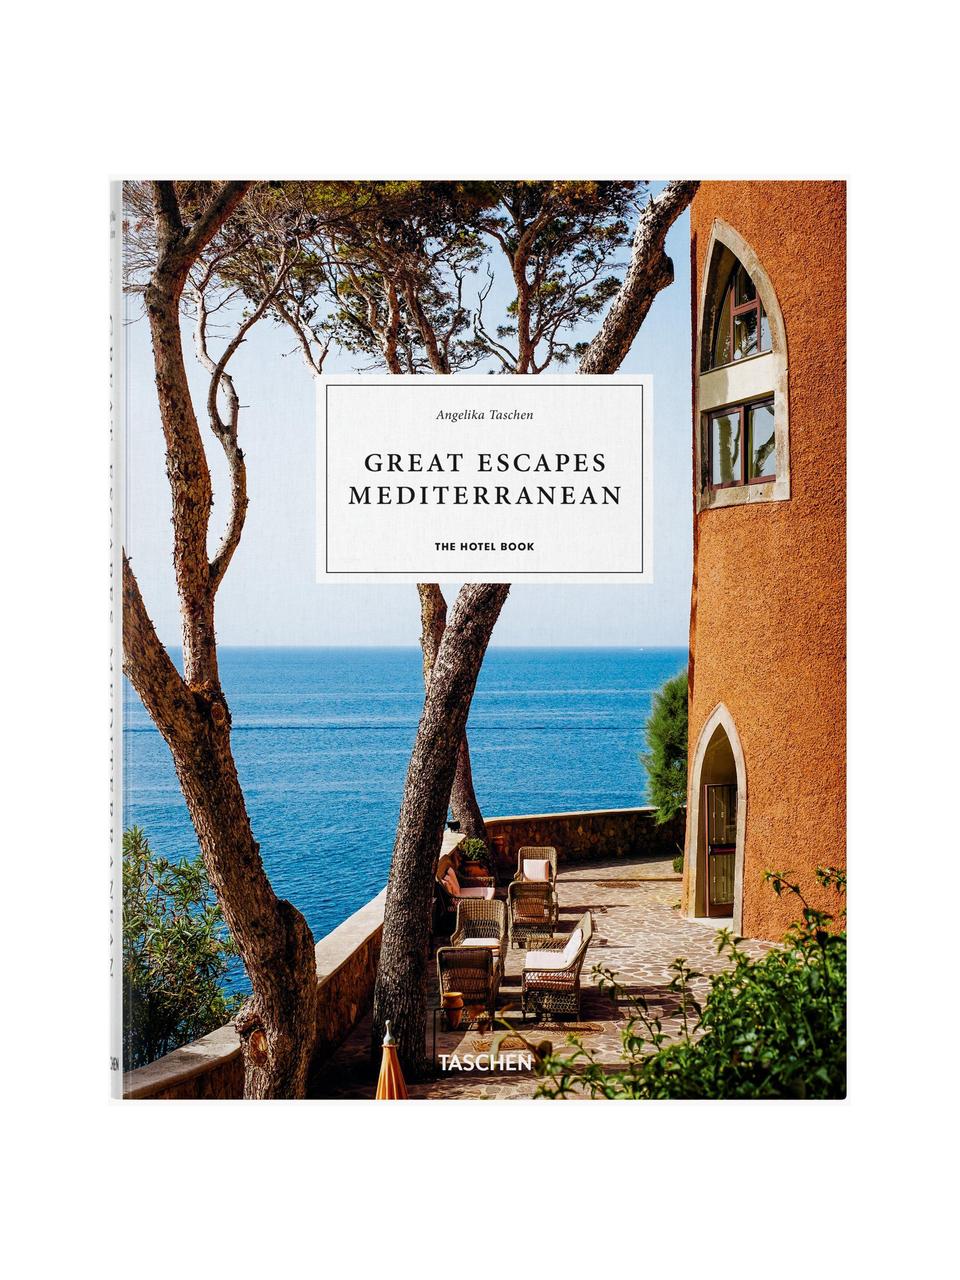 Libro ilustrado Great Escapes Mediterranean, Papel, tapa dura, Mediterraneo, An 24 x Al 30 cm